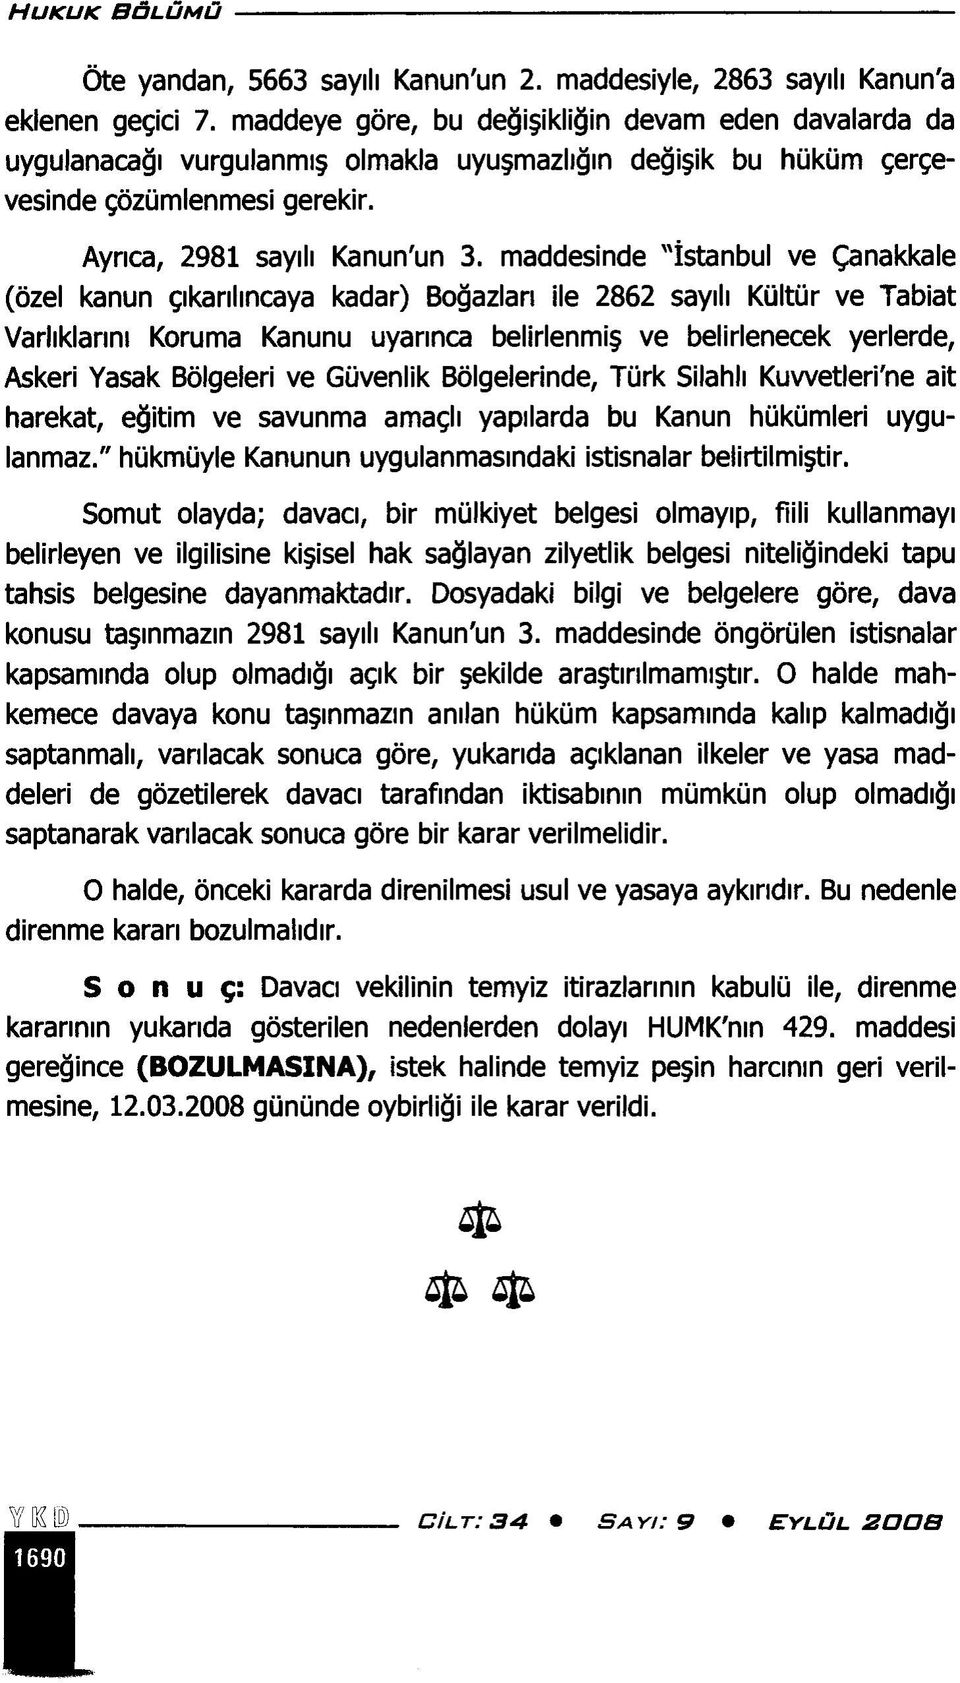 maddesinde "İstanbul ve Çanakkale (özel kanun çıkarılıncaya kadar) Boğazları ile 2862 sayılı Kültür ve Tabiat Varlıklarını Koruma Kanunu uyarınca belirlenmiş ve belirlenecek yerlerde, Askeri Yasak